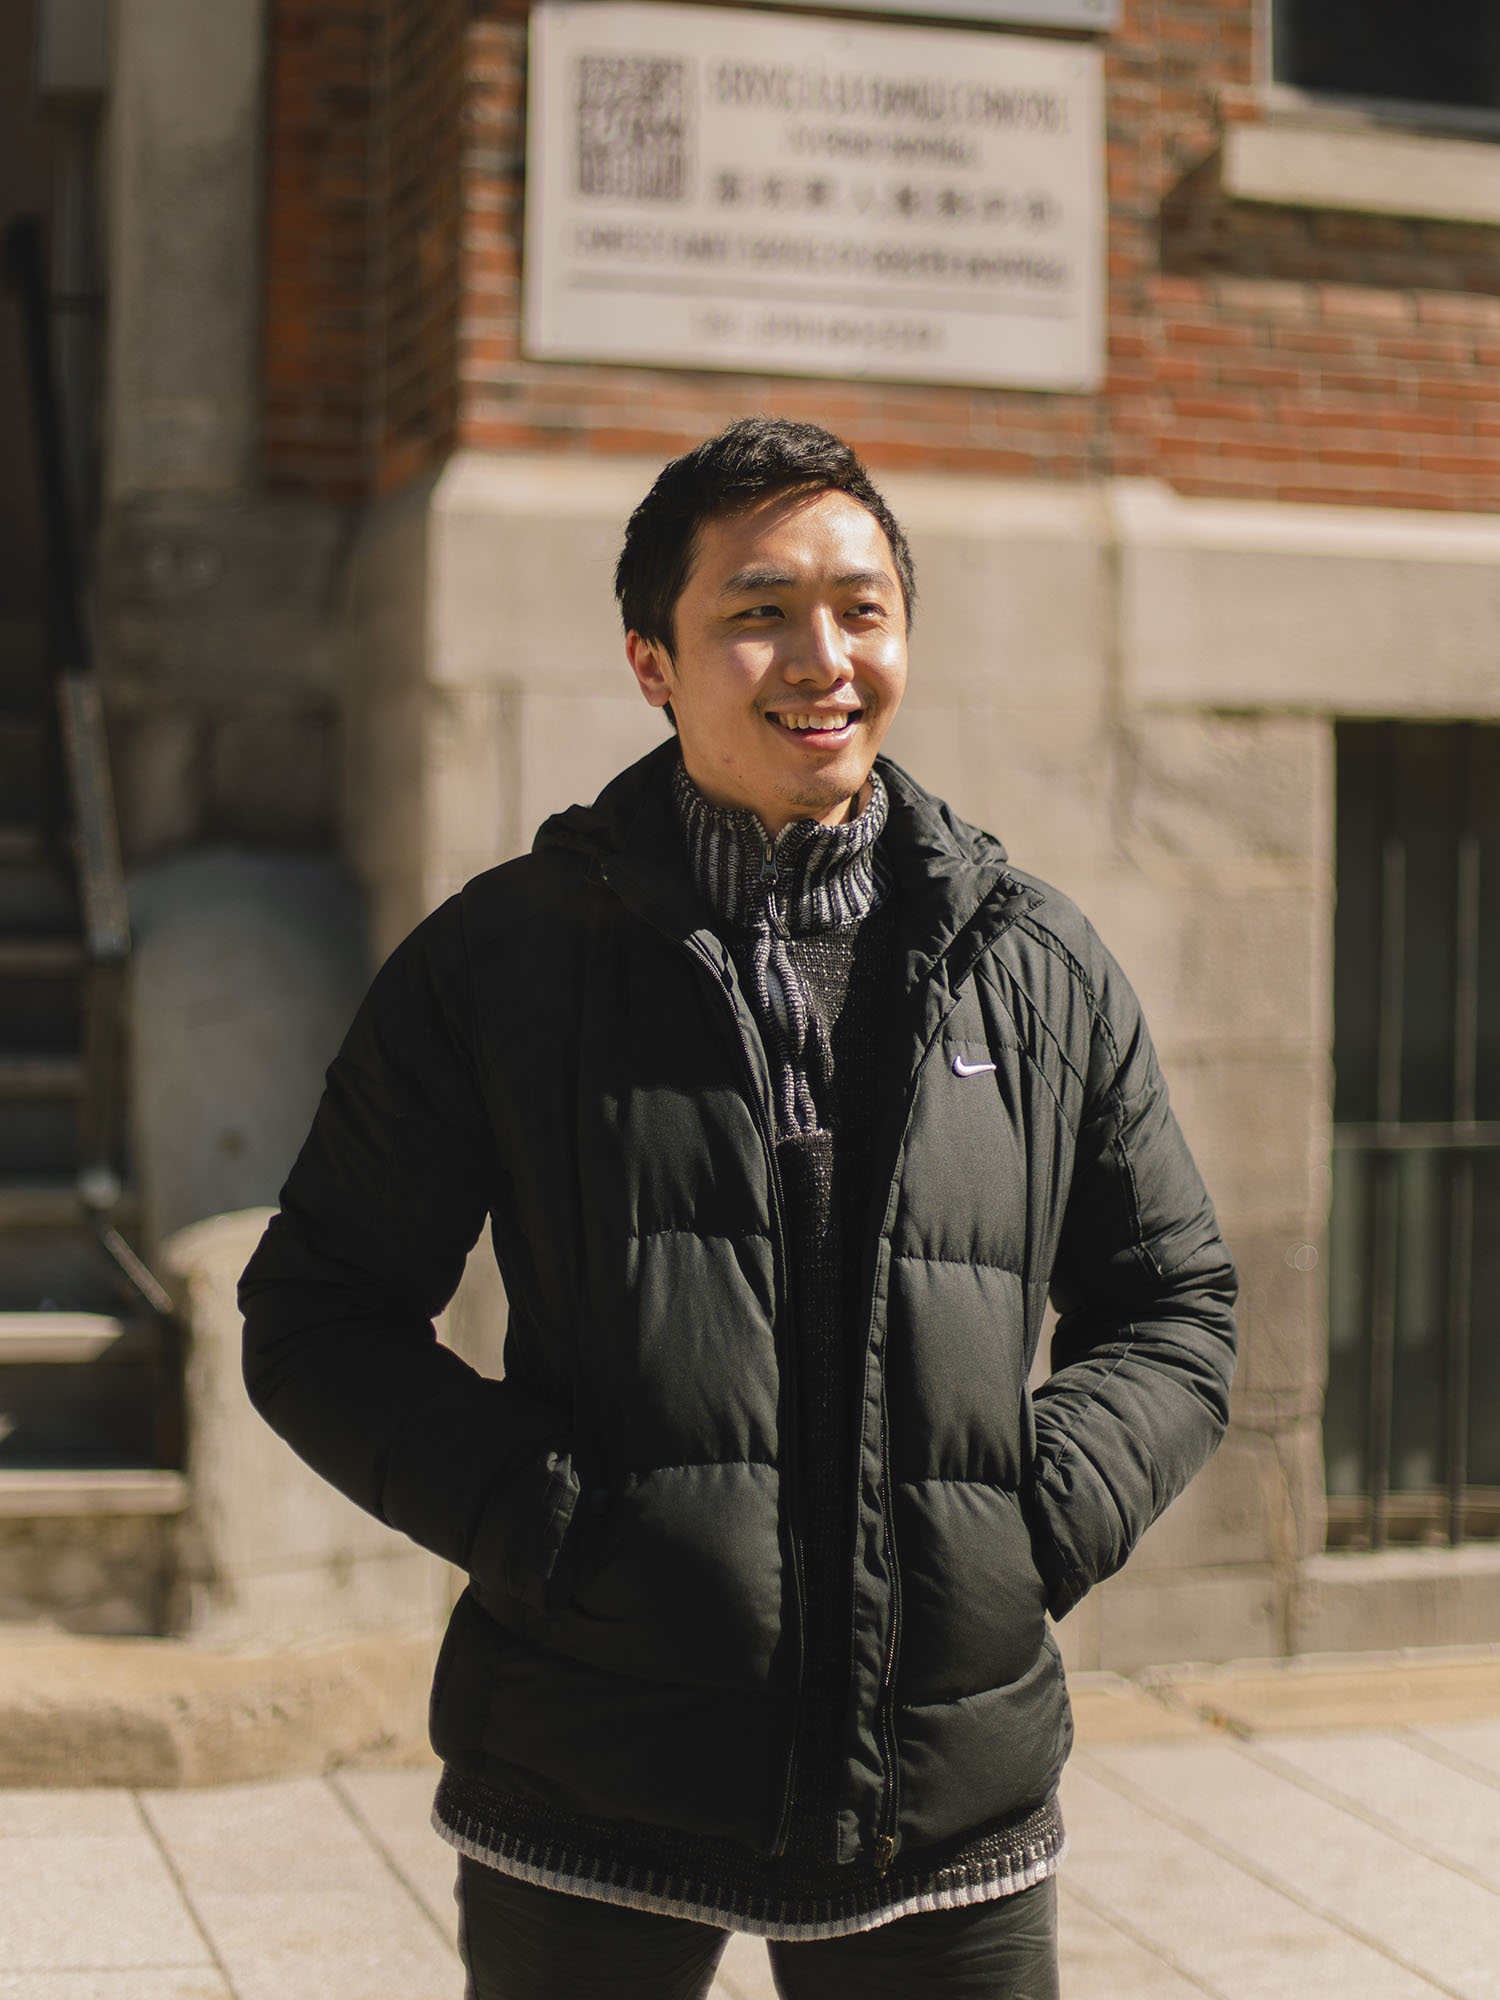 Photo couleur d’un jeune homme souriant, les mains dans les poches de son manteau, devant un édifice dans le quartier chinois. 